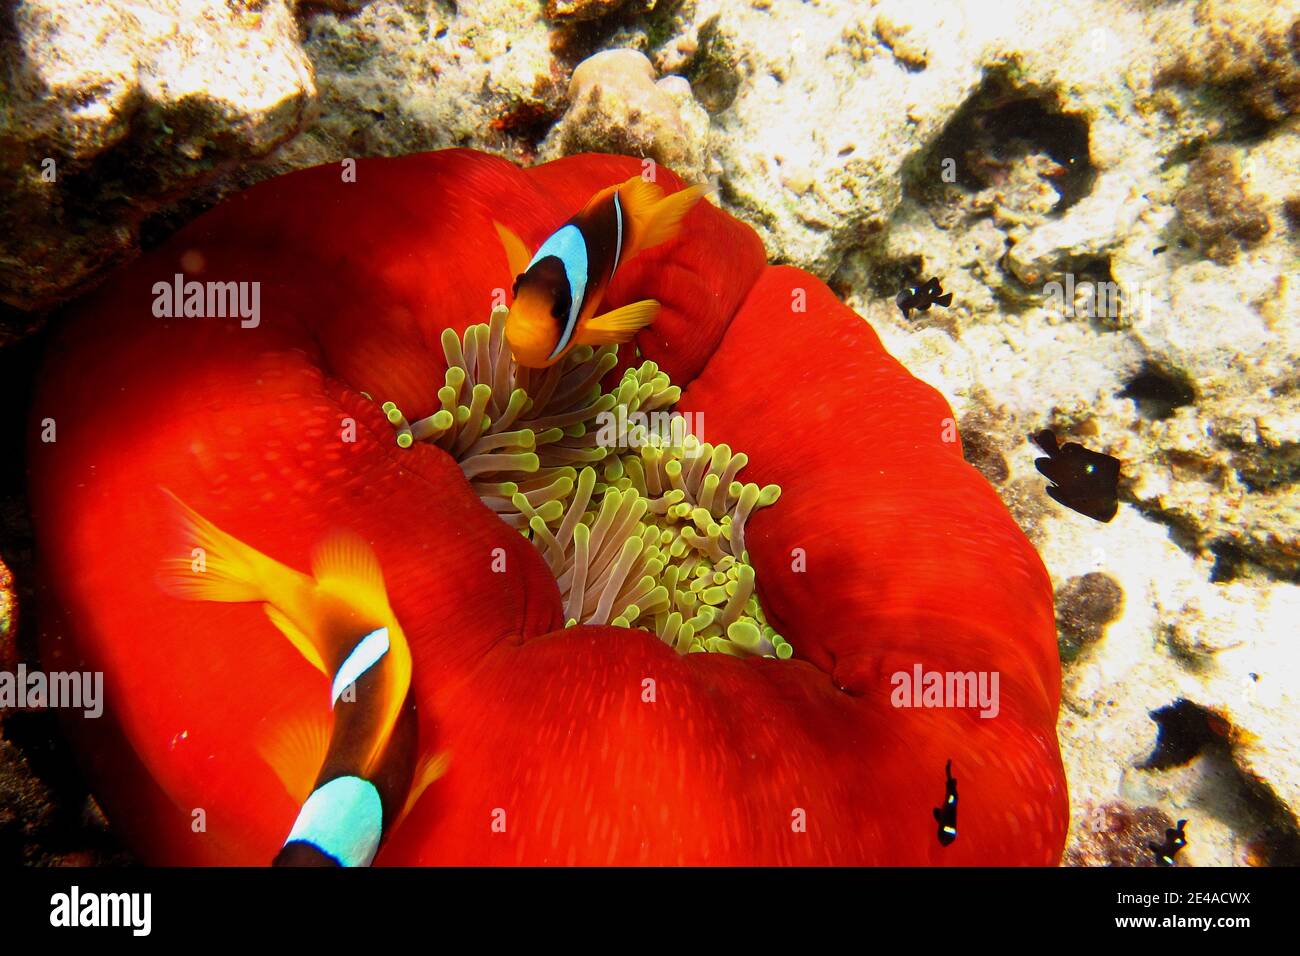 Anemone rosso con anemonefici nel Mar Rosso Foto Stock